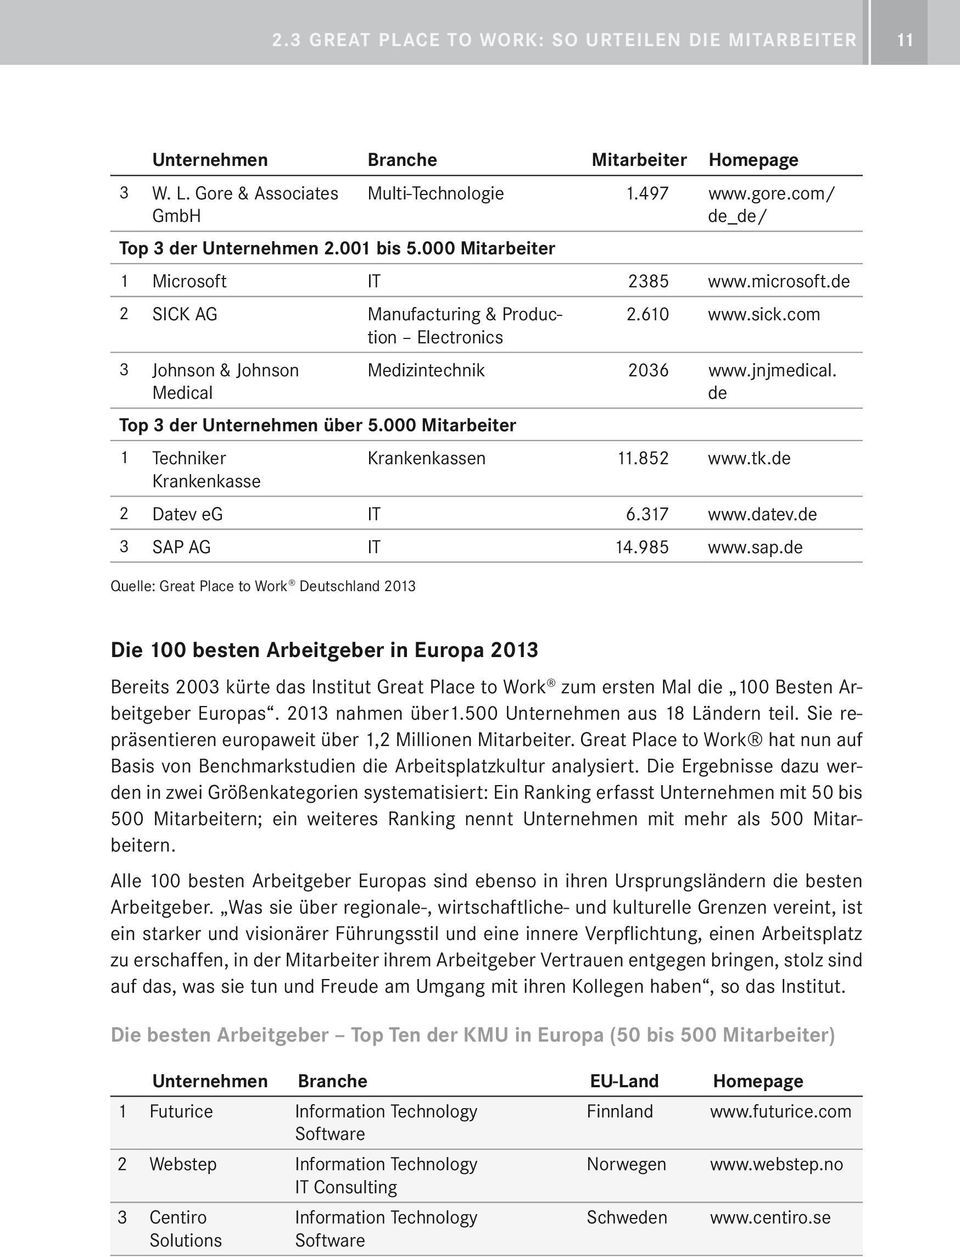 de Top 3 der Unternehmen über 5.000 Mitarbeiter 1 Techniker Krankenkassen 11.852 www.tk.de Krankenkasse 2 Datev eg IT 6.317 www.datev.de 3 SAP AG IT 14.985 www.sap.